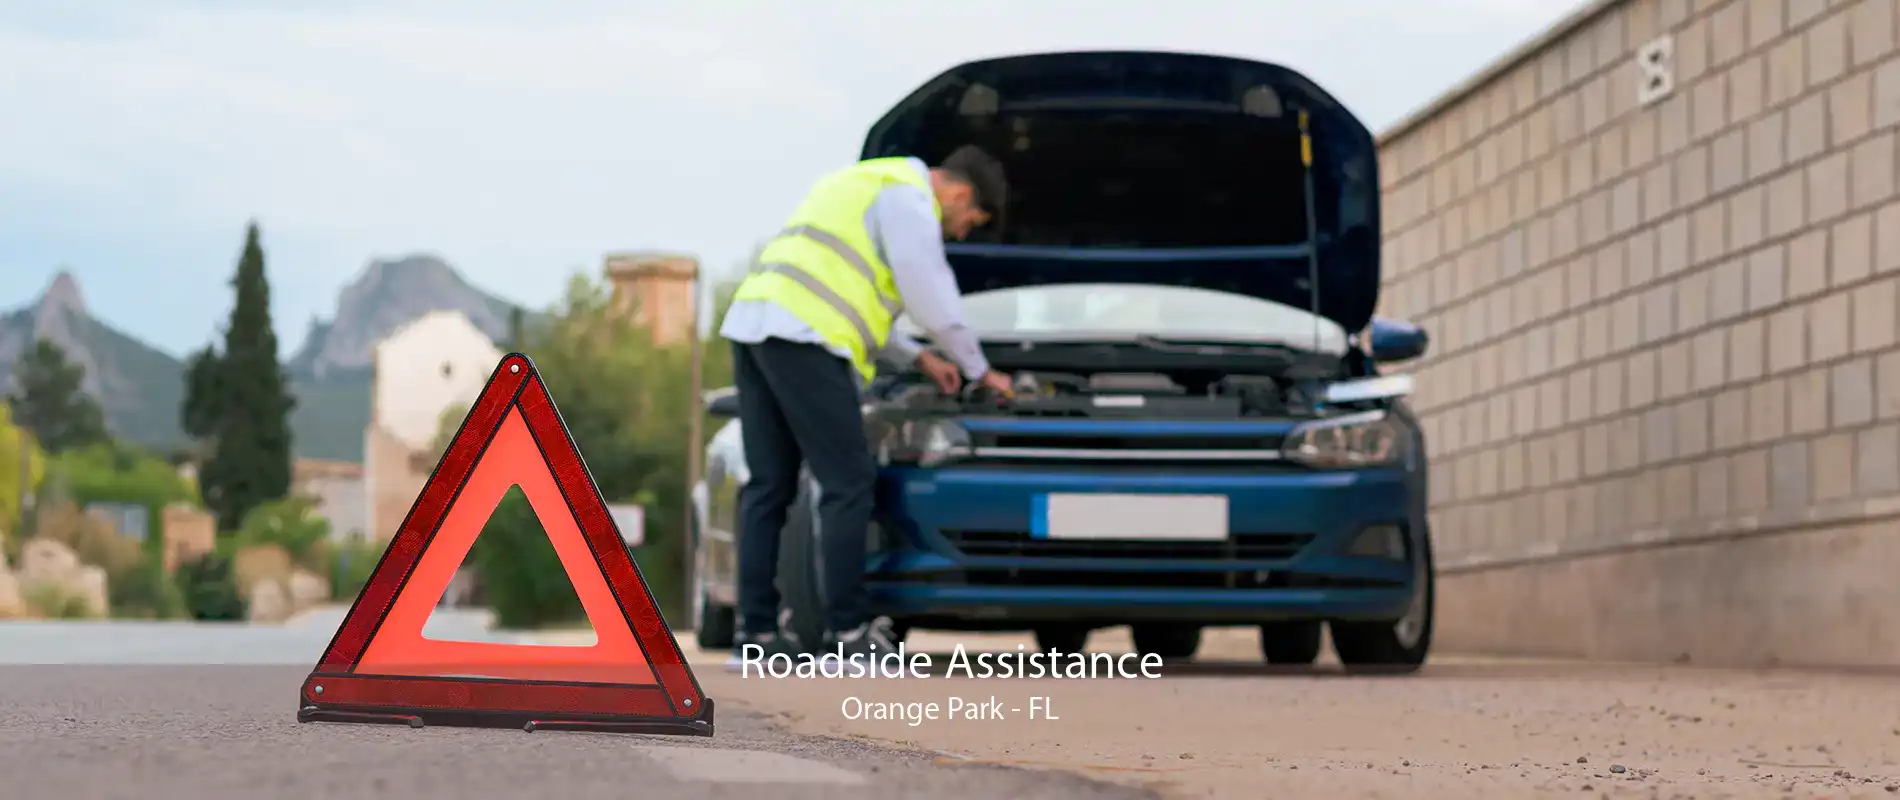 Roadside Assistance Orange Park - FL